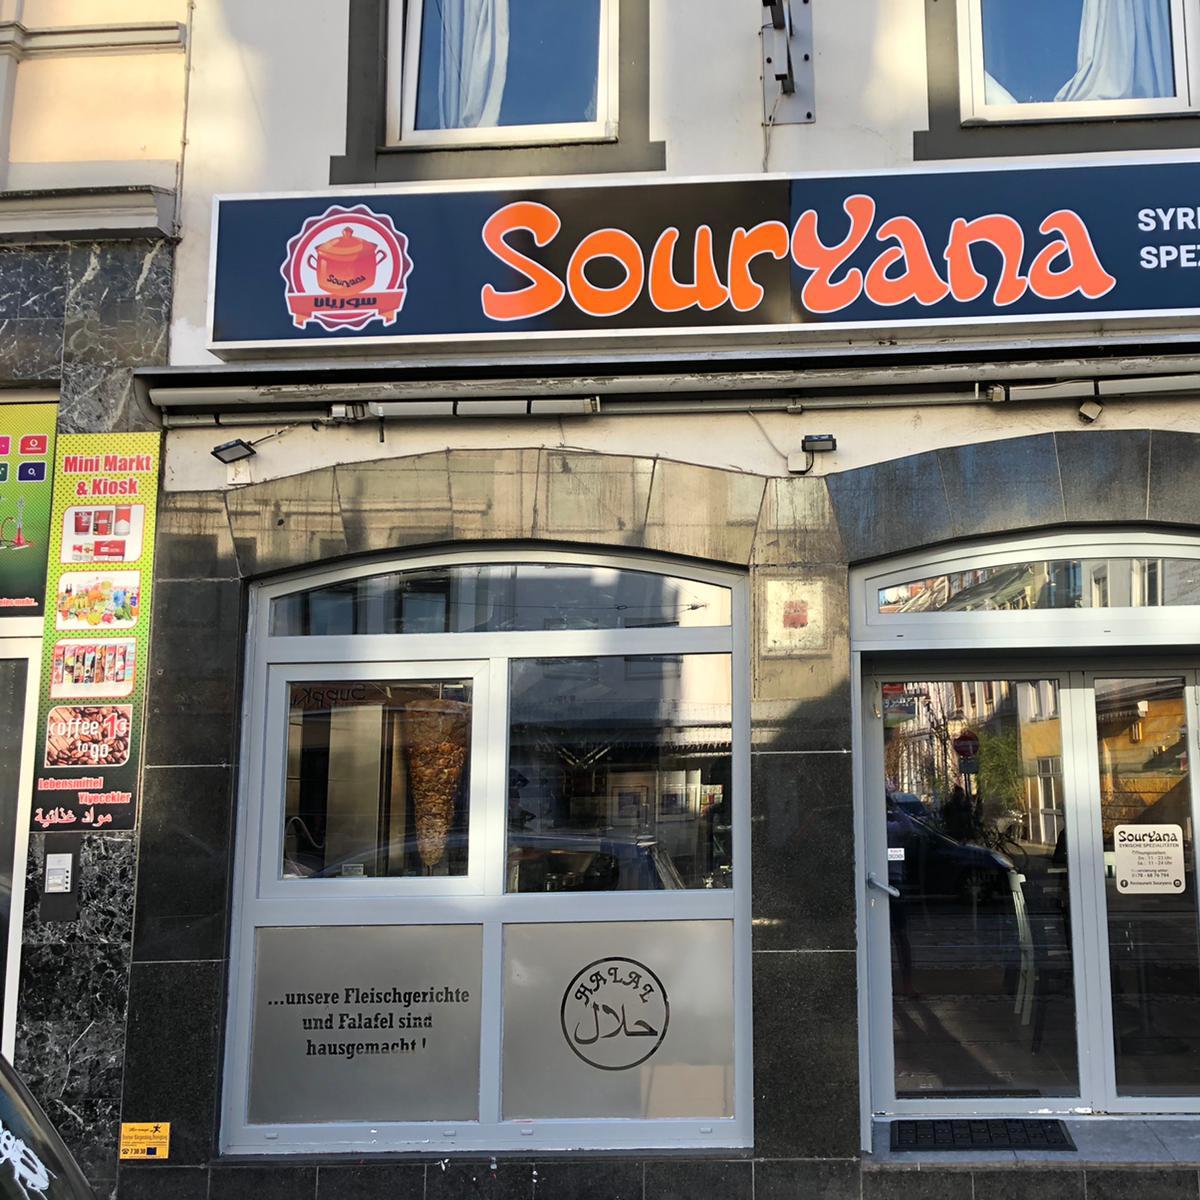 Restaurant "Restaurant Souryana" in Bremen